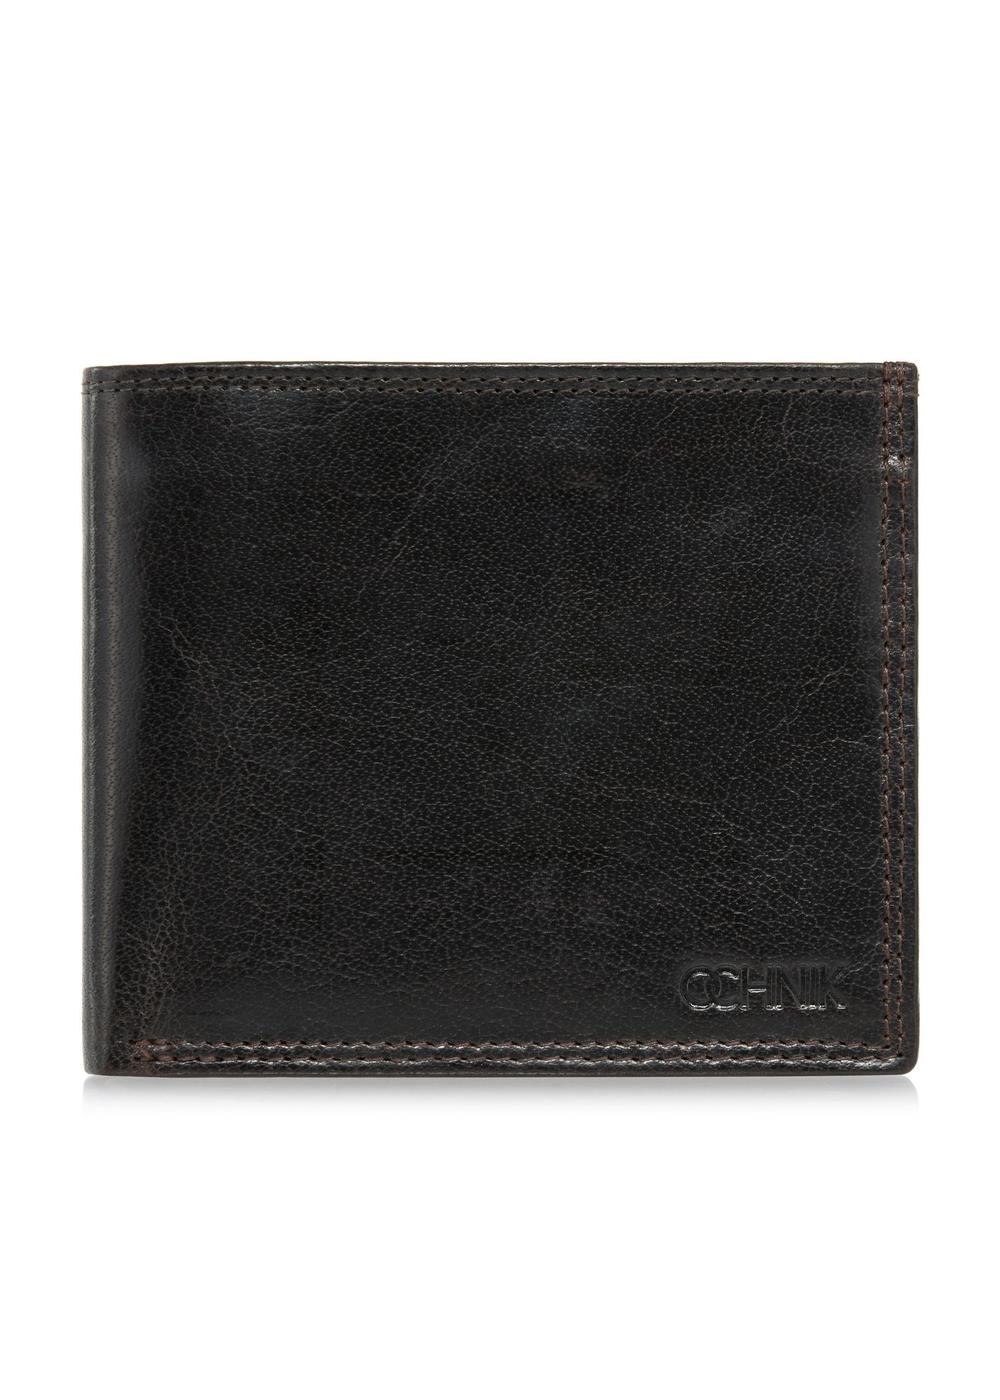 Brązowy niezapinany skórzany portfel męski PORMS-0555-89(W24)